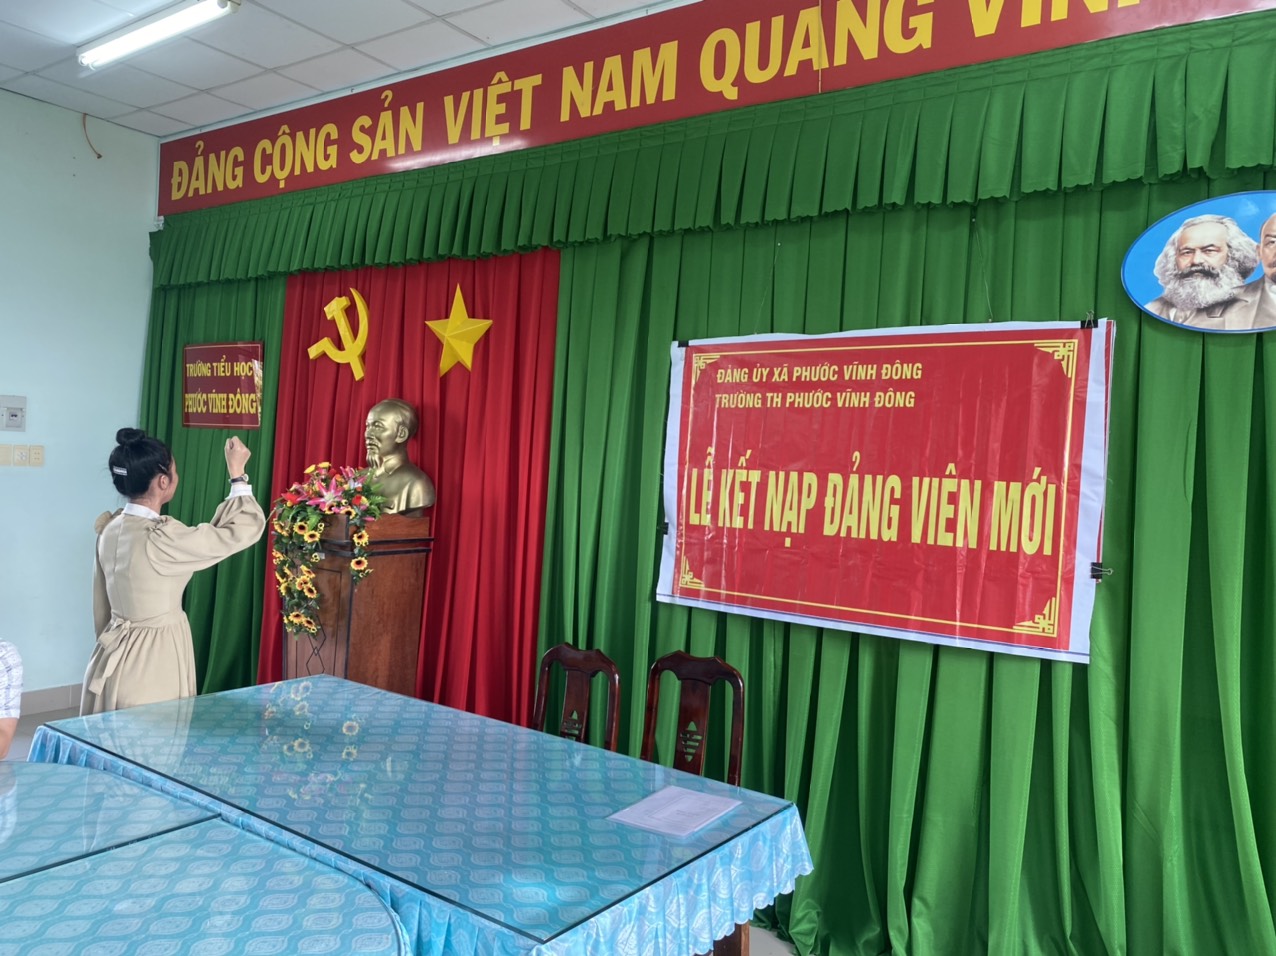 Trường Tiểu học Phước Vĩnh Đông  tổ chức Lễ kết nạp đảng viên mới